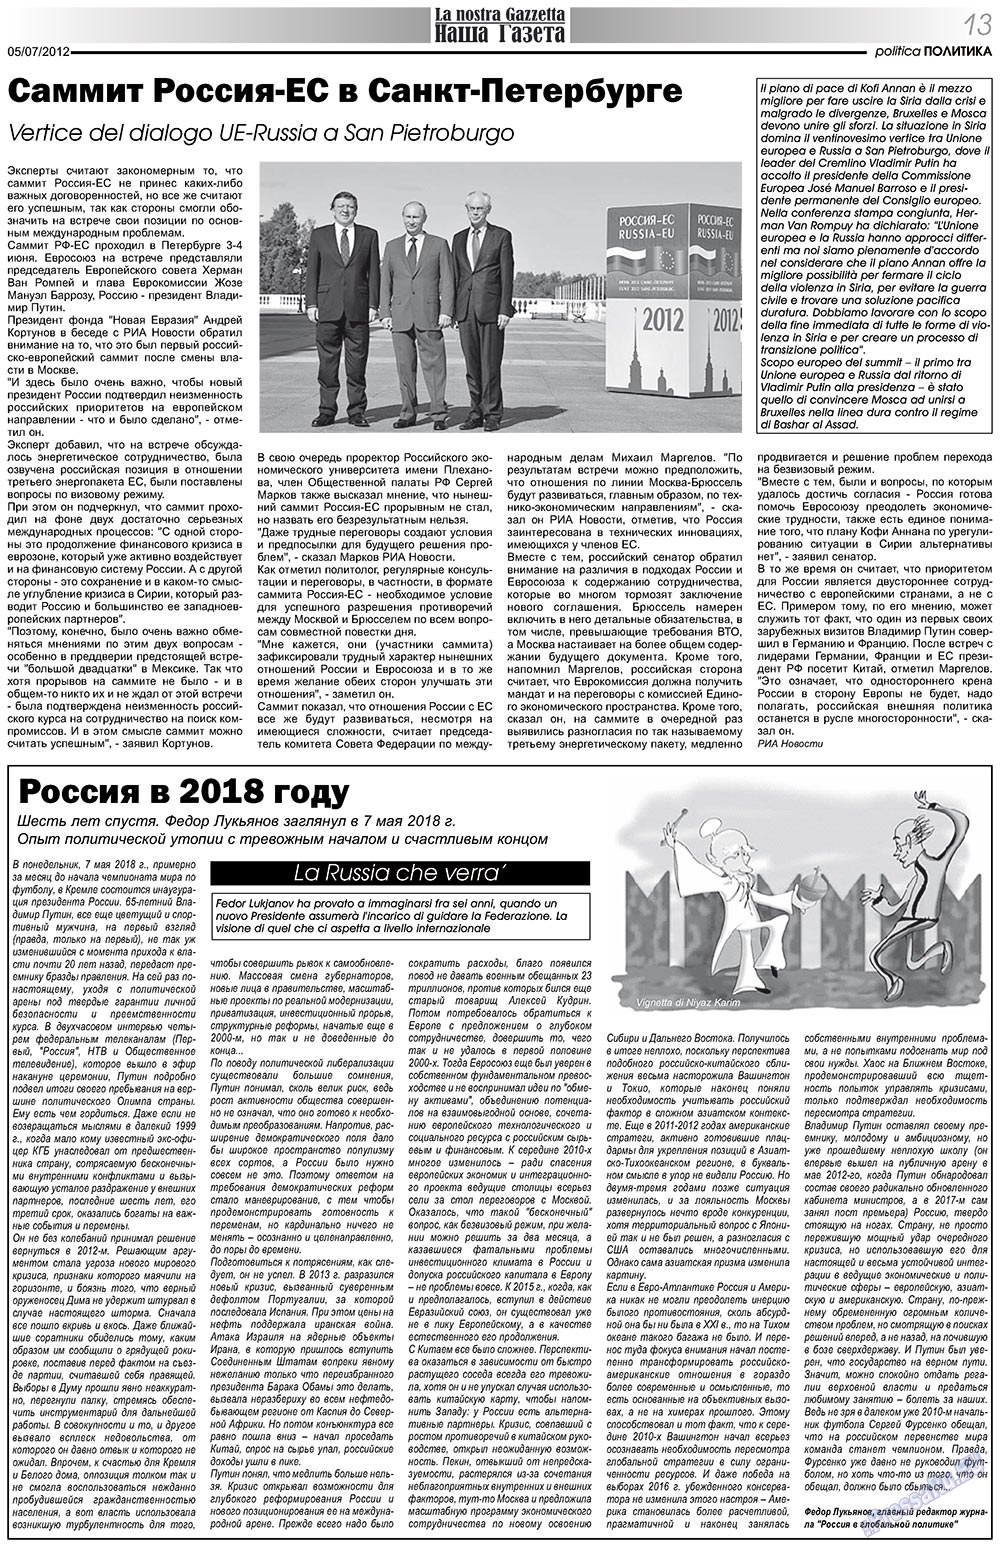 Наша Газета Италия, газета. 2012 №157 стр.13